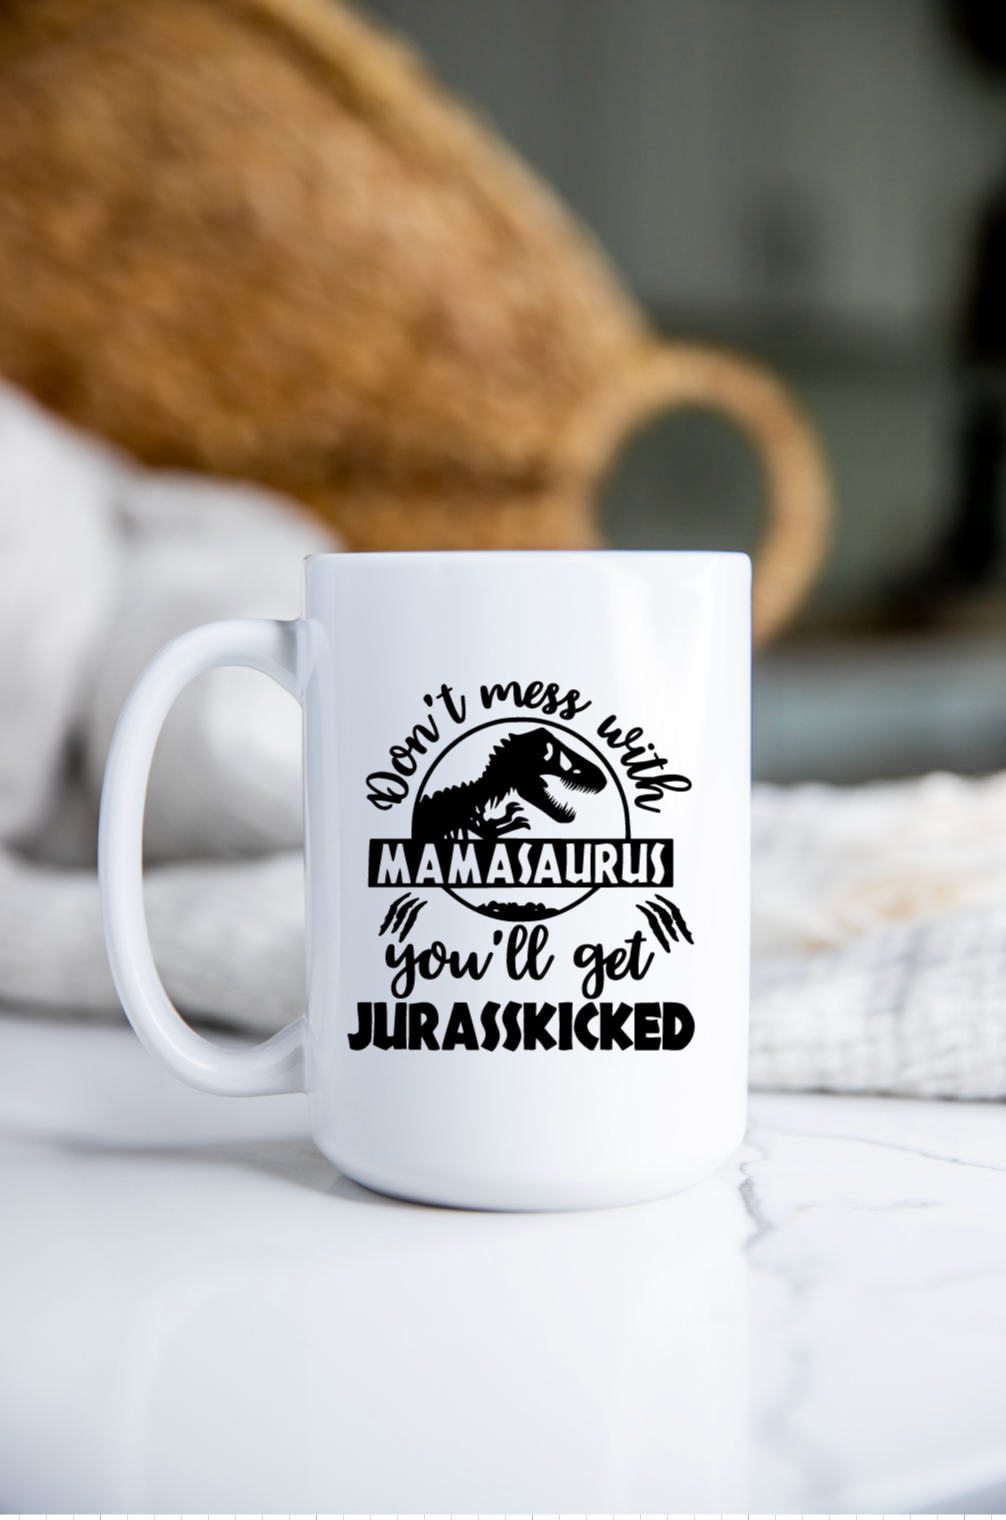 Mamasaurus mug